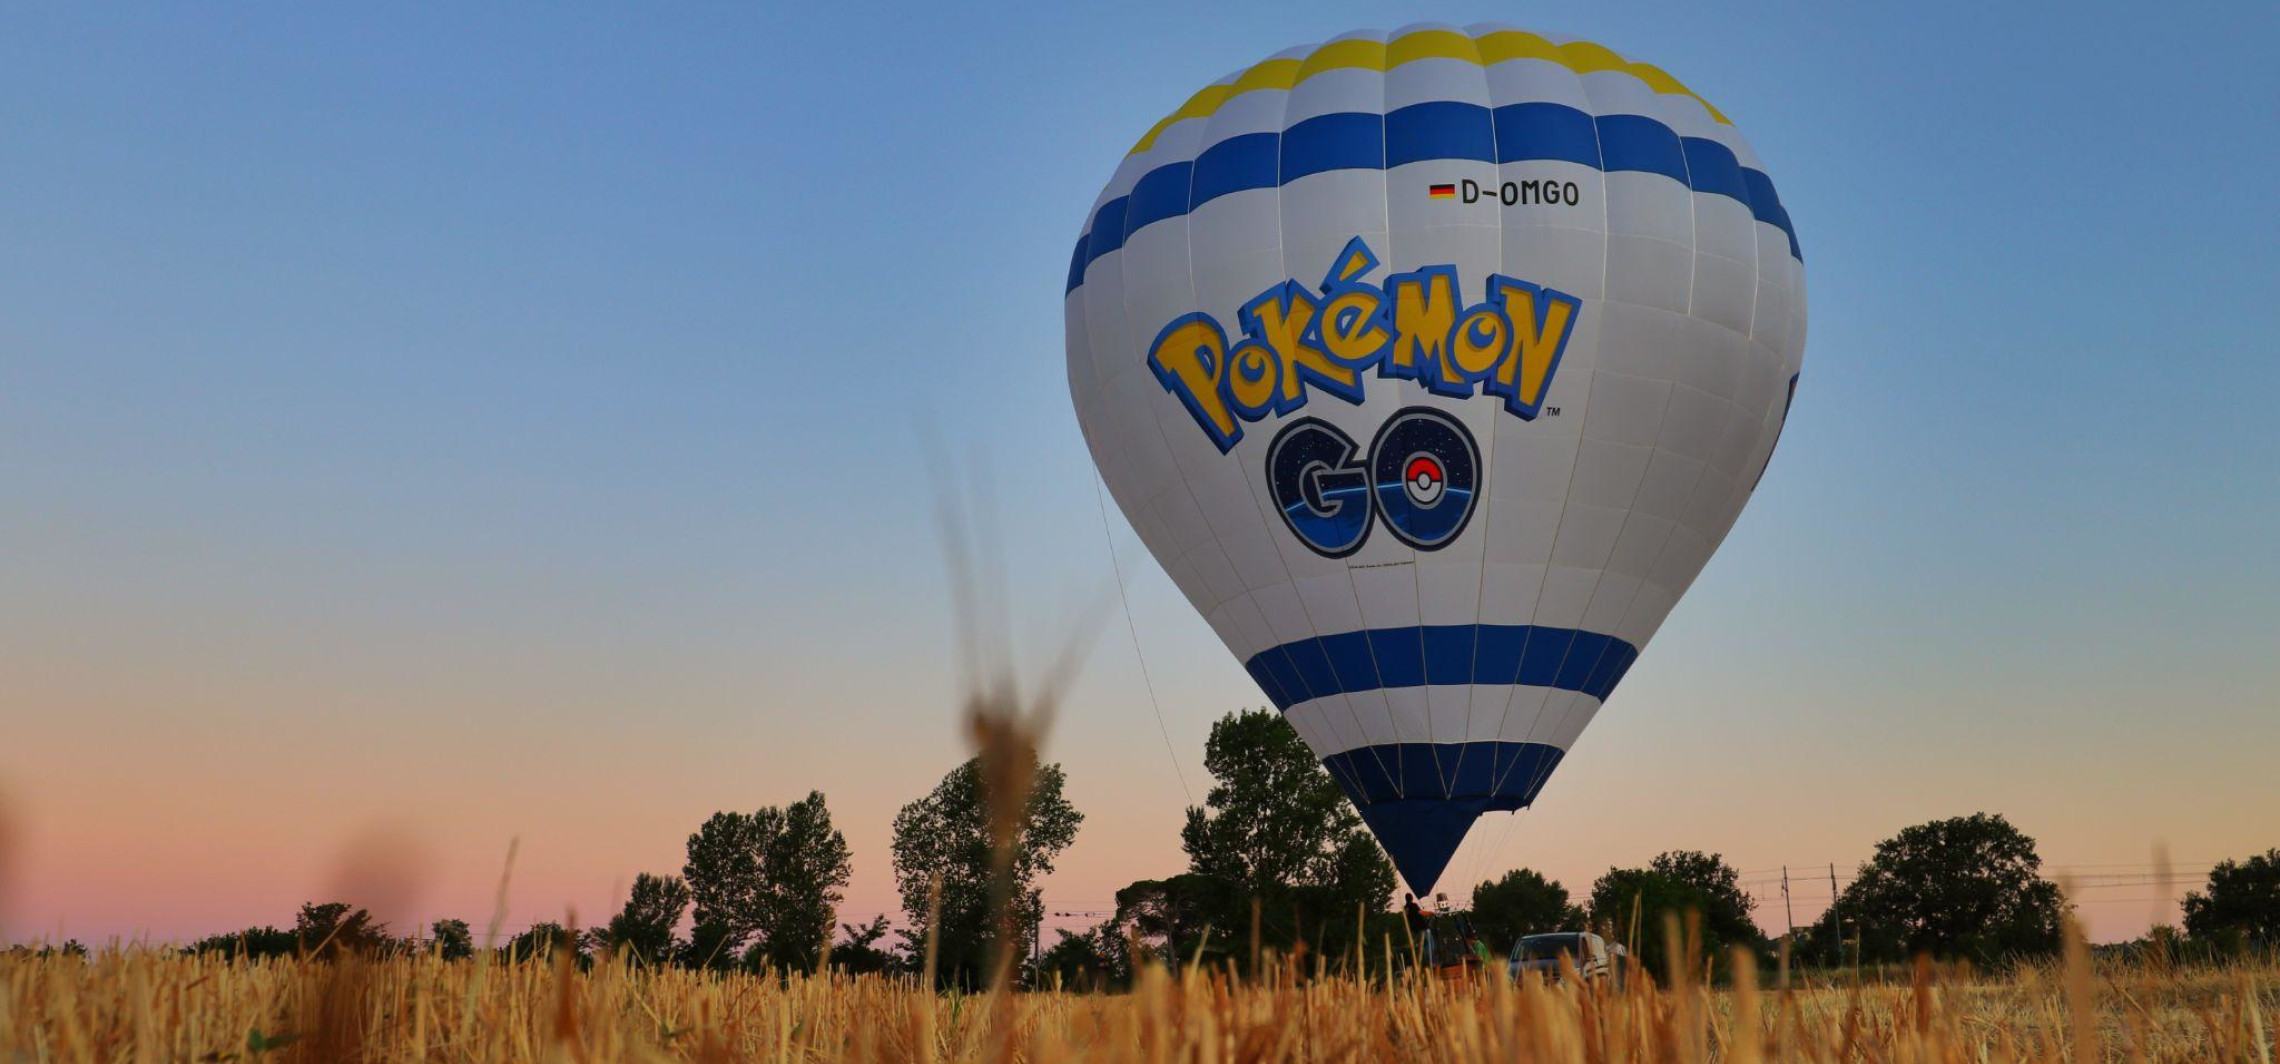 Kraj - Wypatruj balonu w swoim mieście i świętuj 6. rocznicę Pokémon GO z innymi trenerami